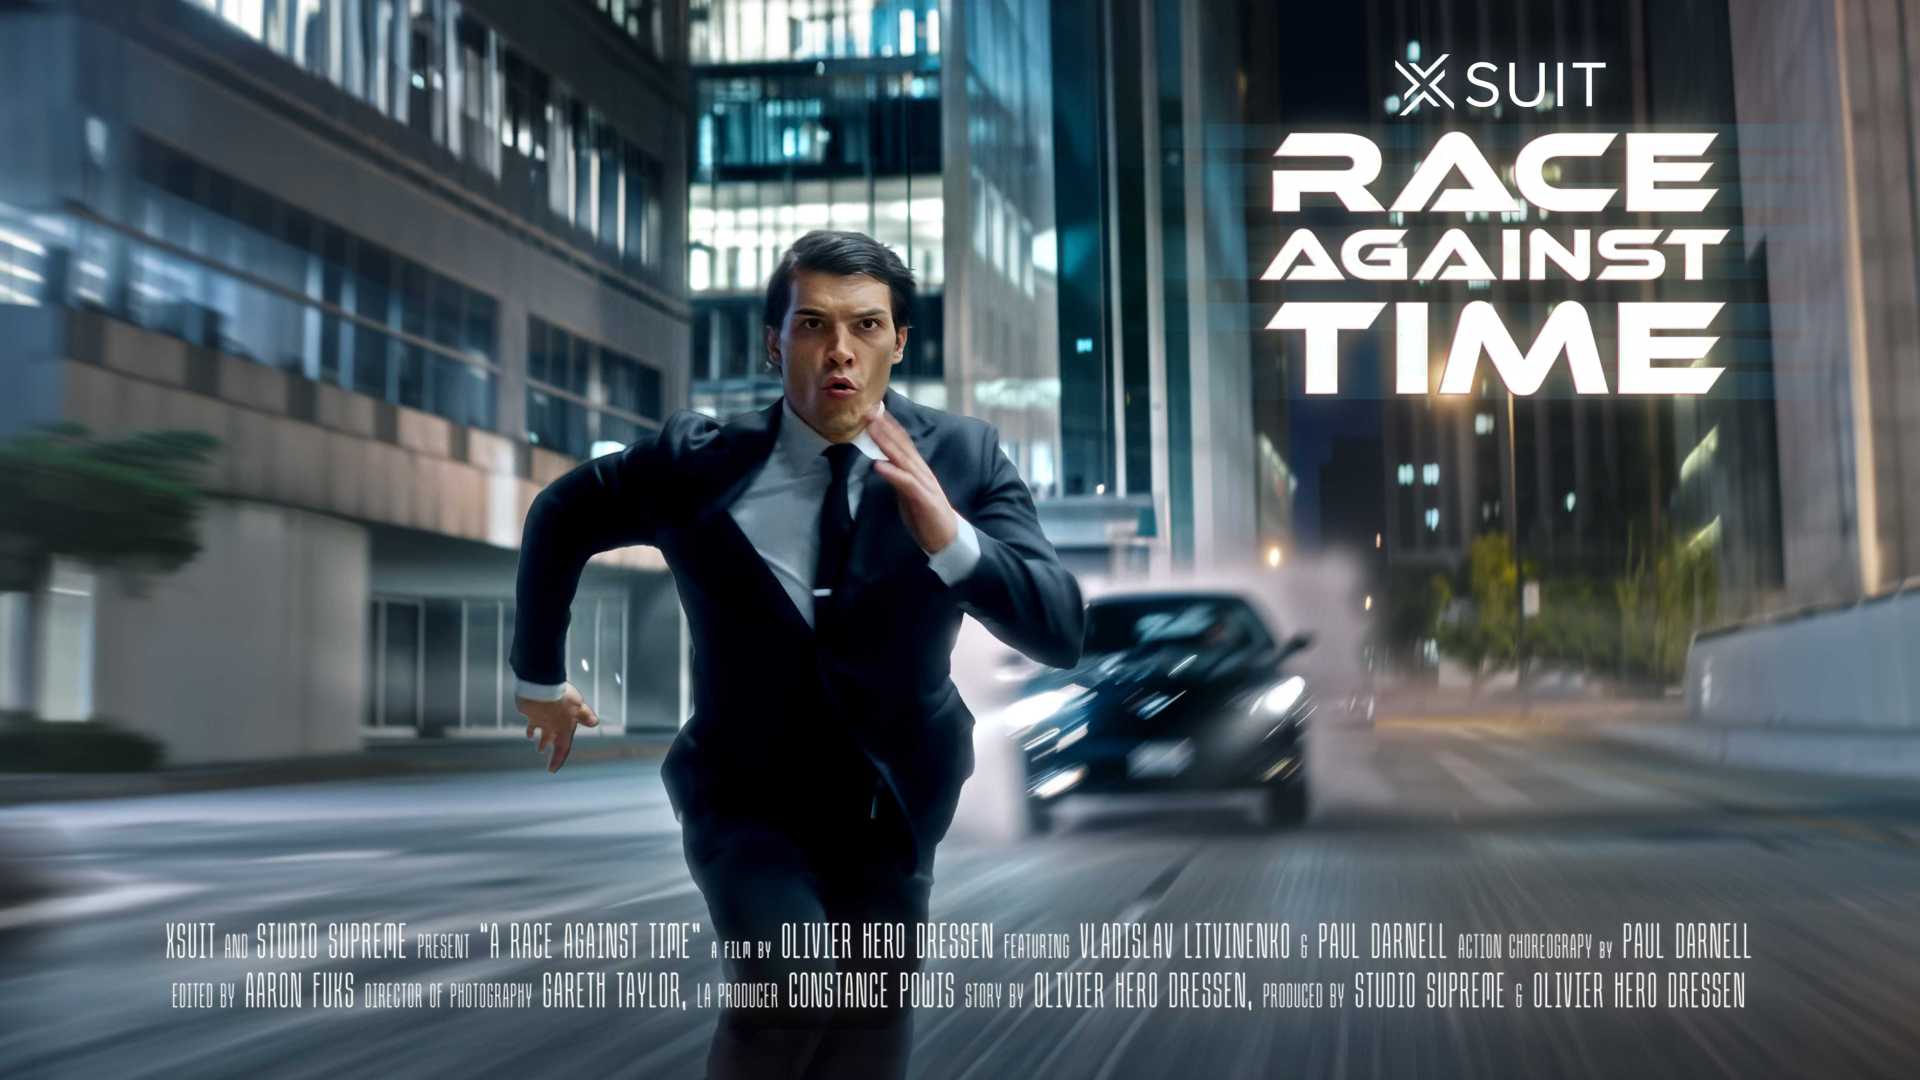 xSuit "A Race Against Time"